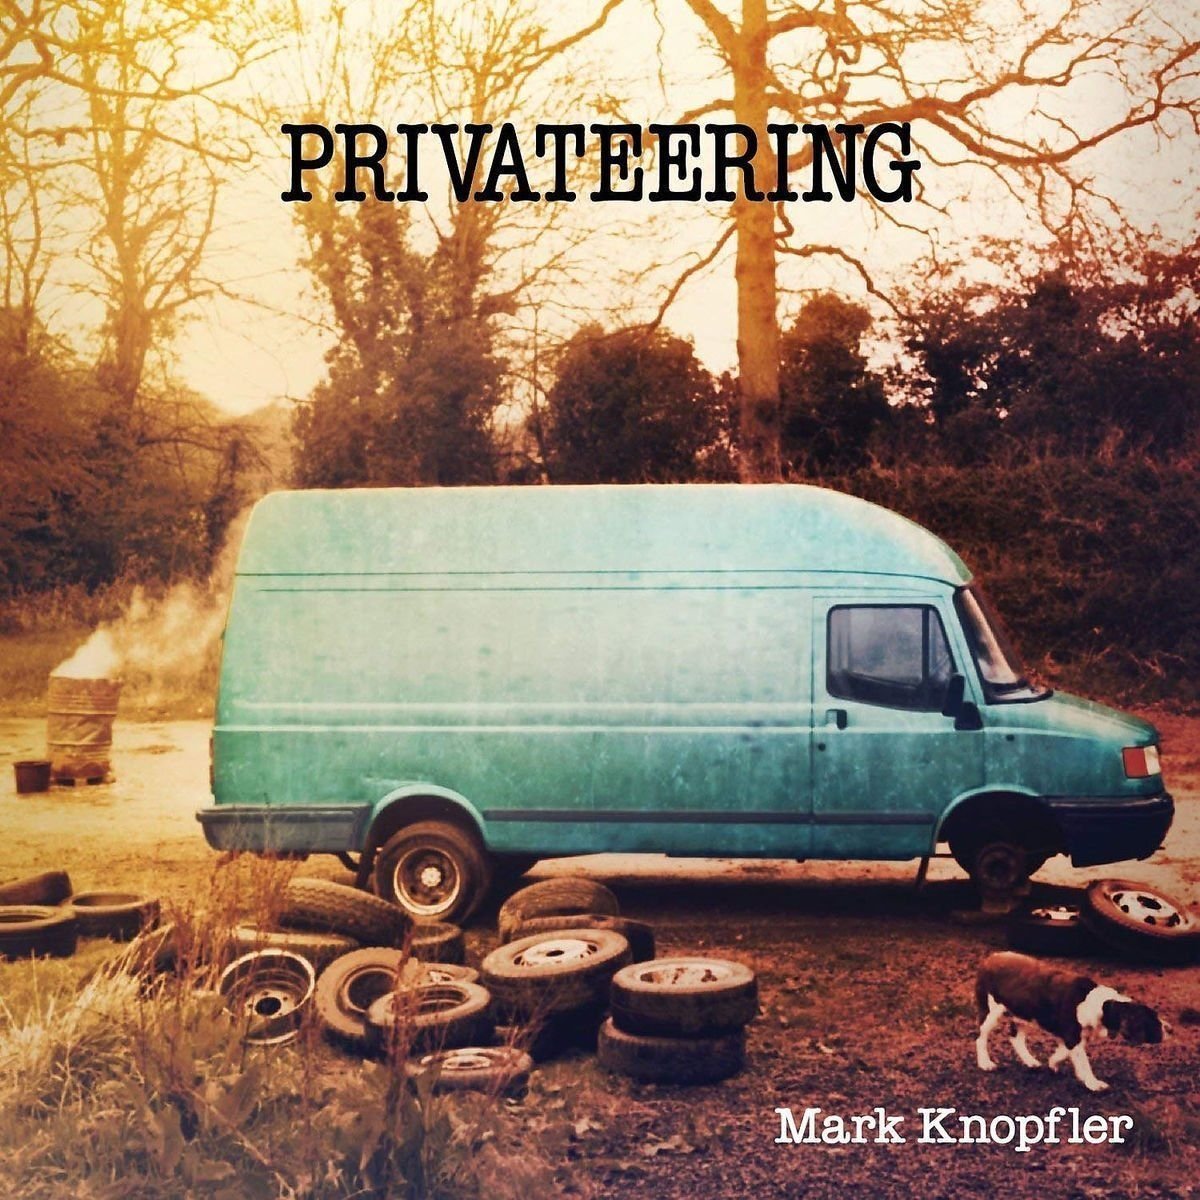 Mark Knopfler - Privateering (2 LP) Mark Knopfler